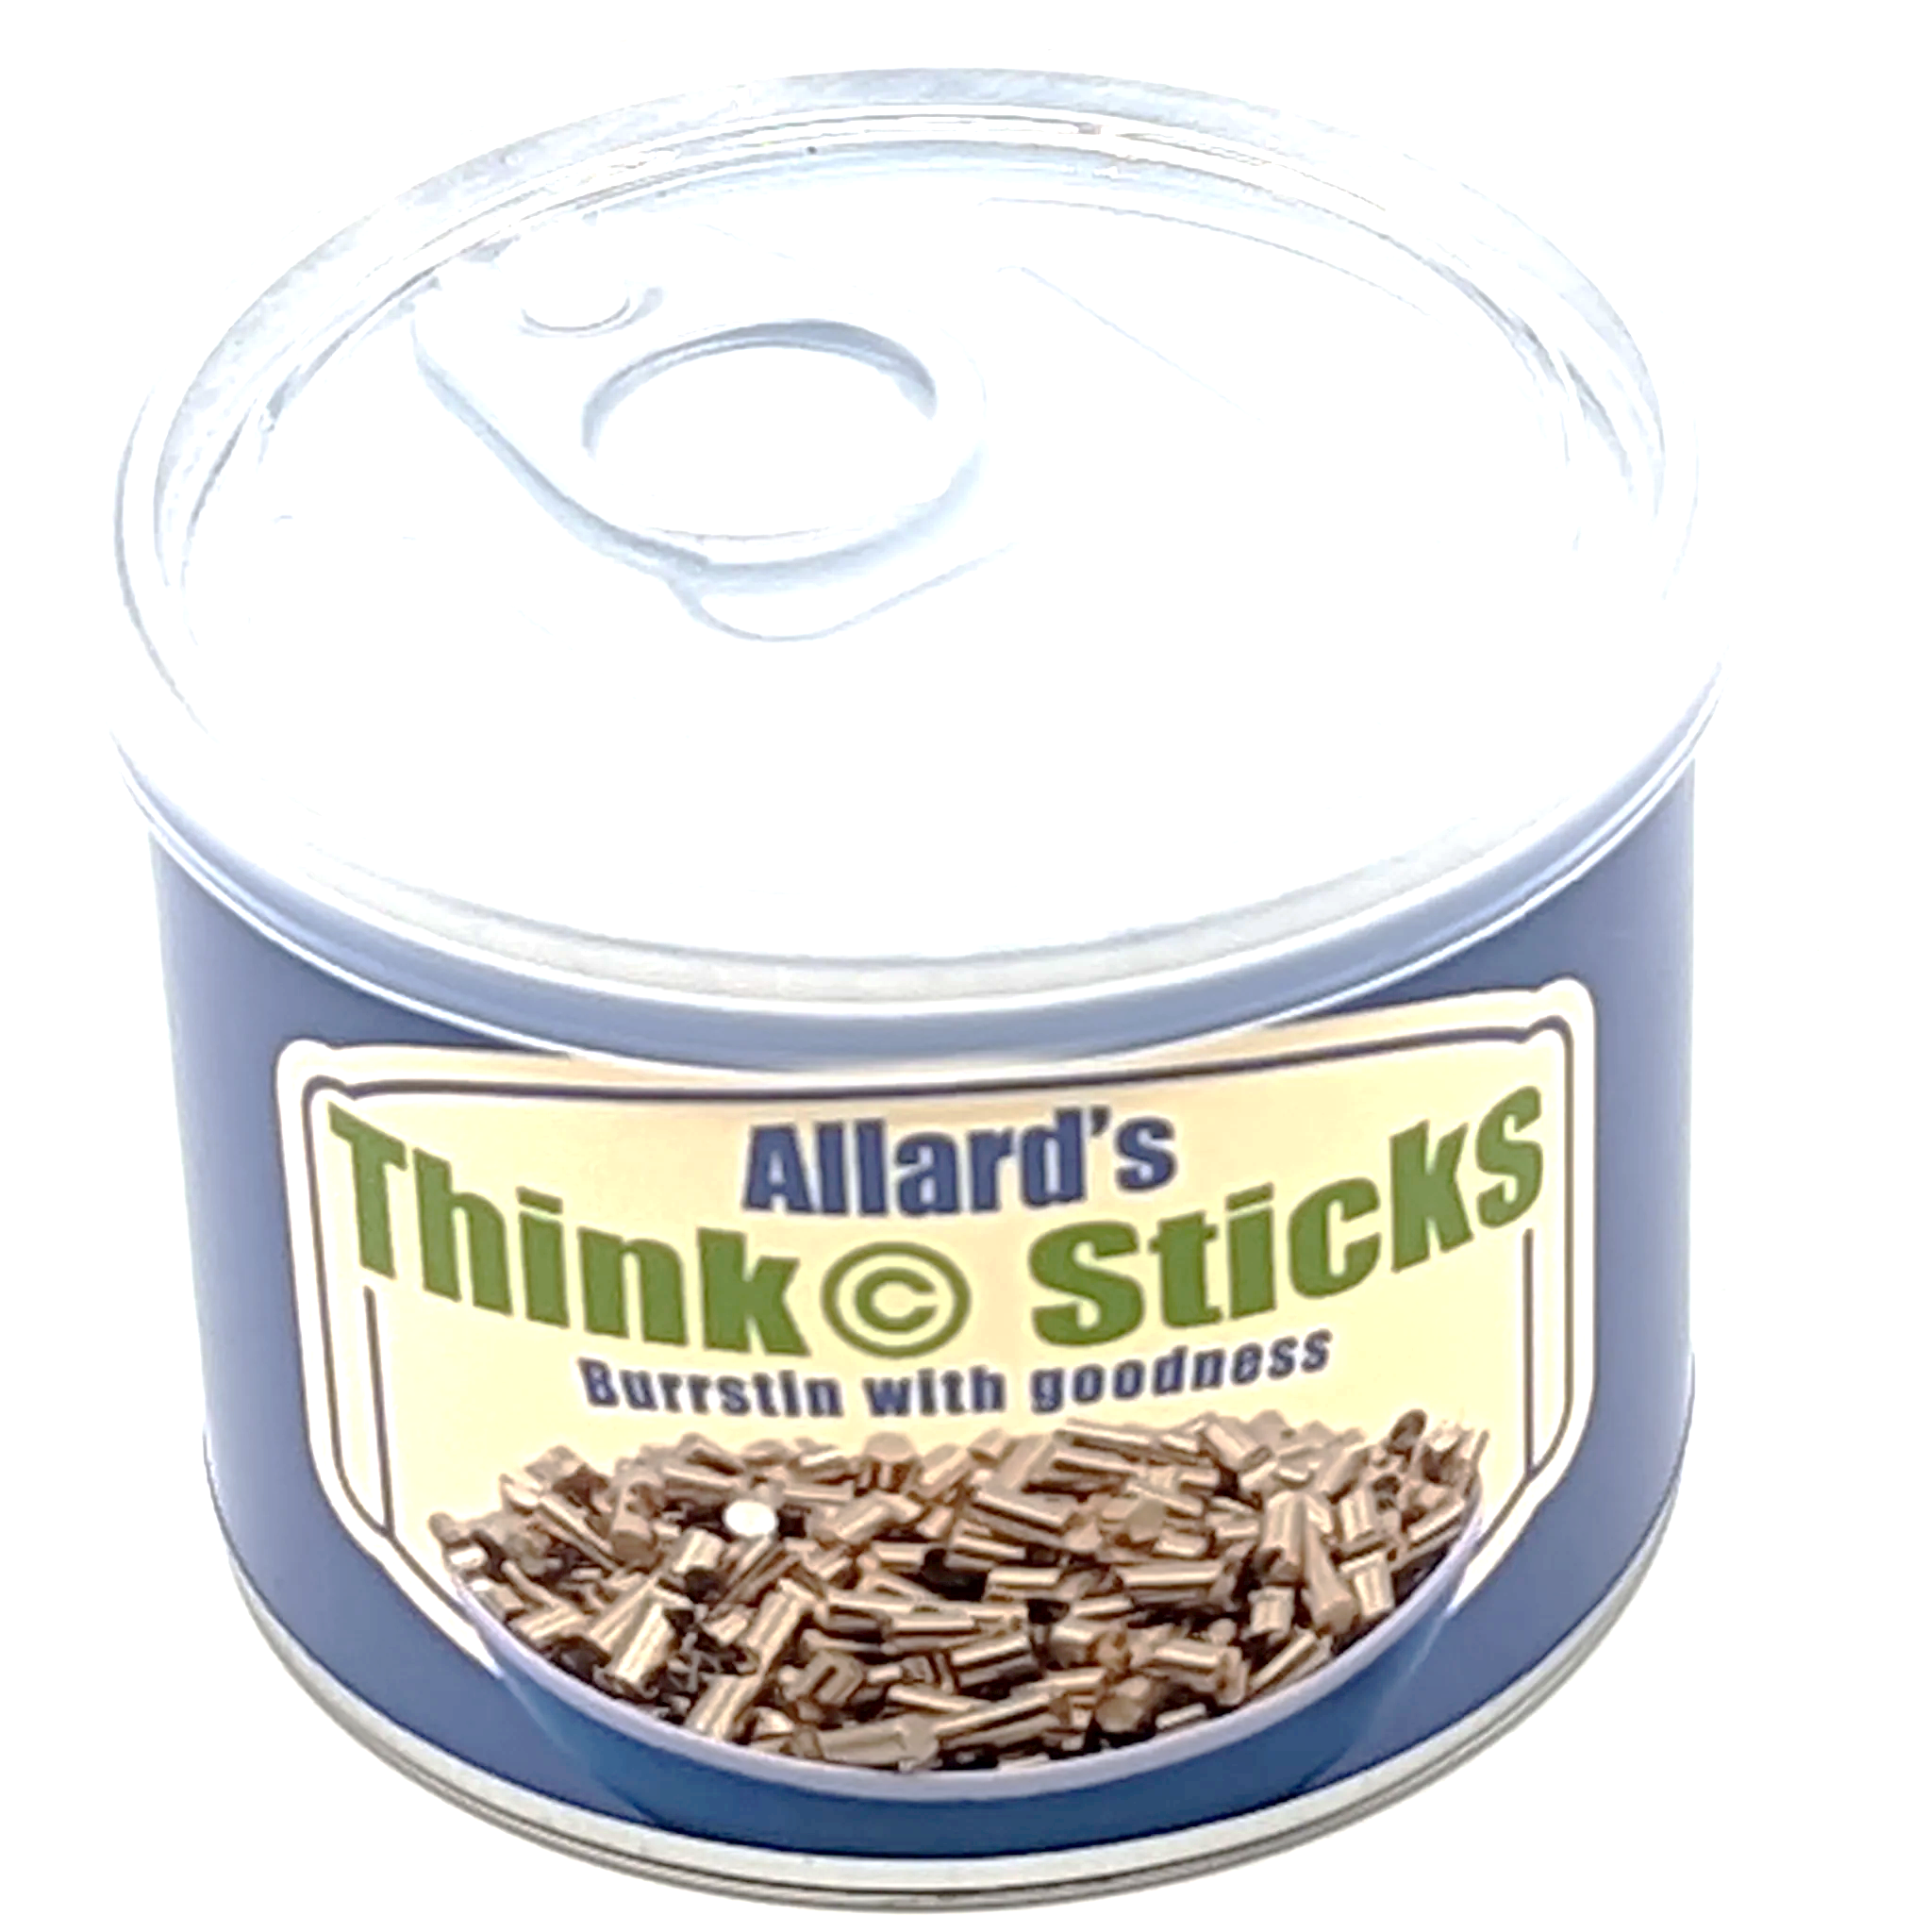 Think Sticks - Walker